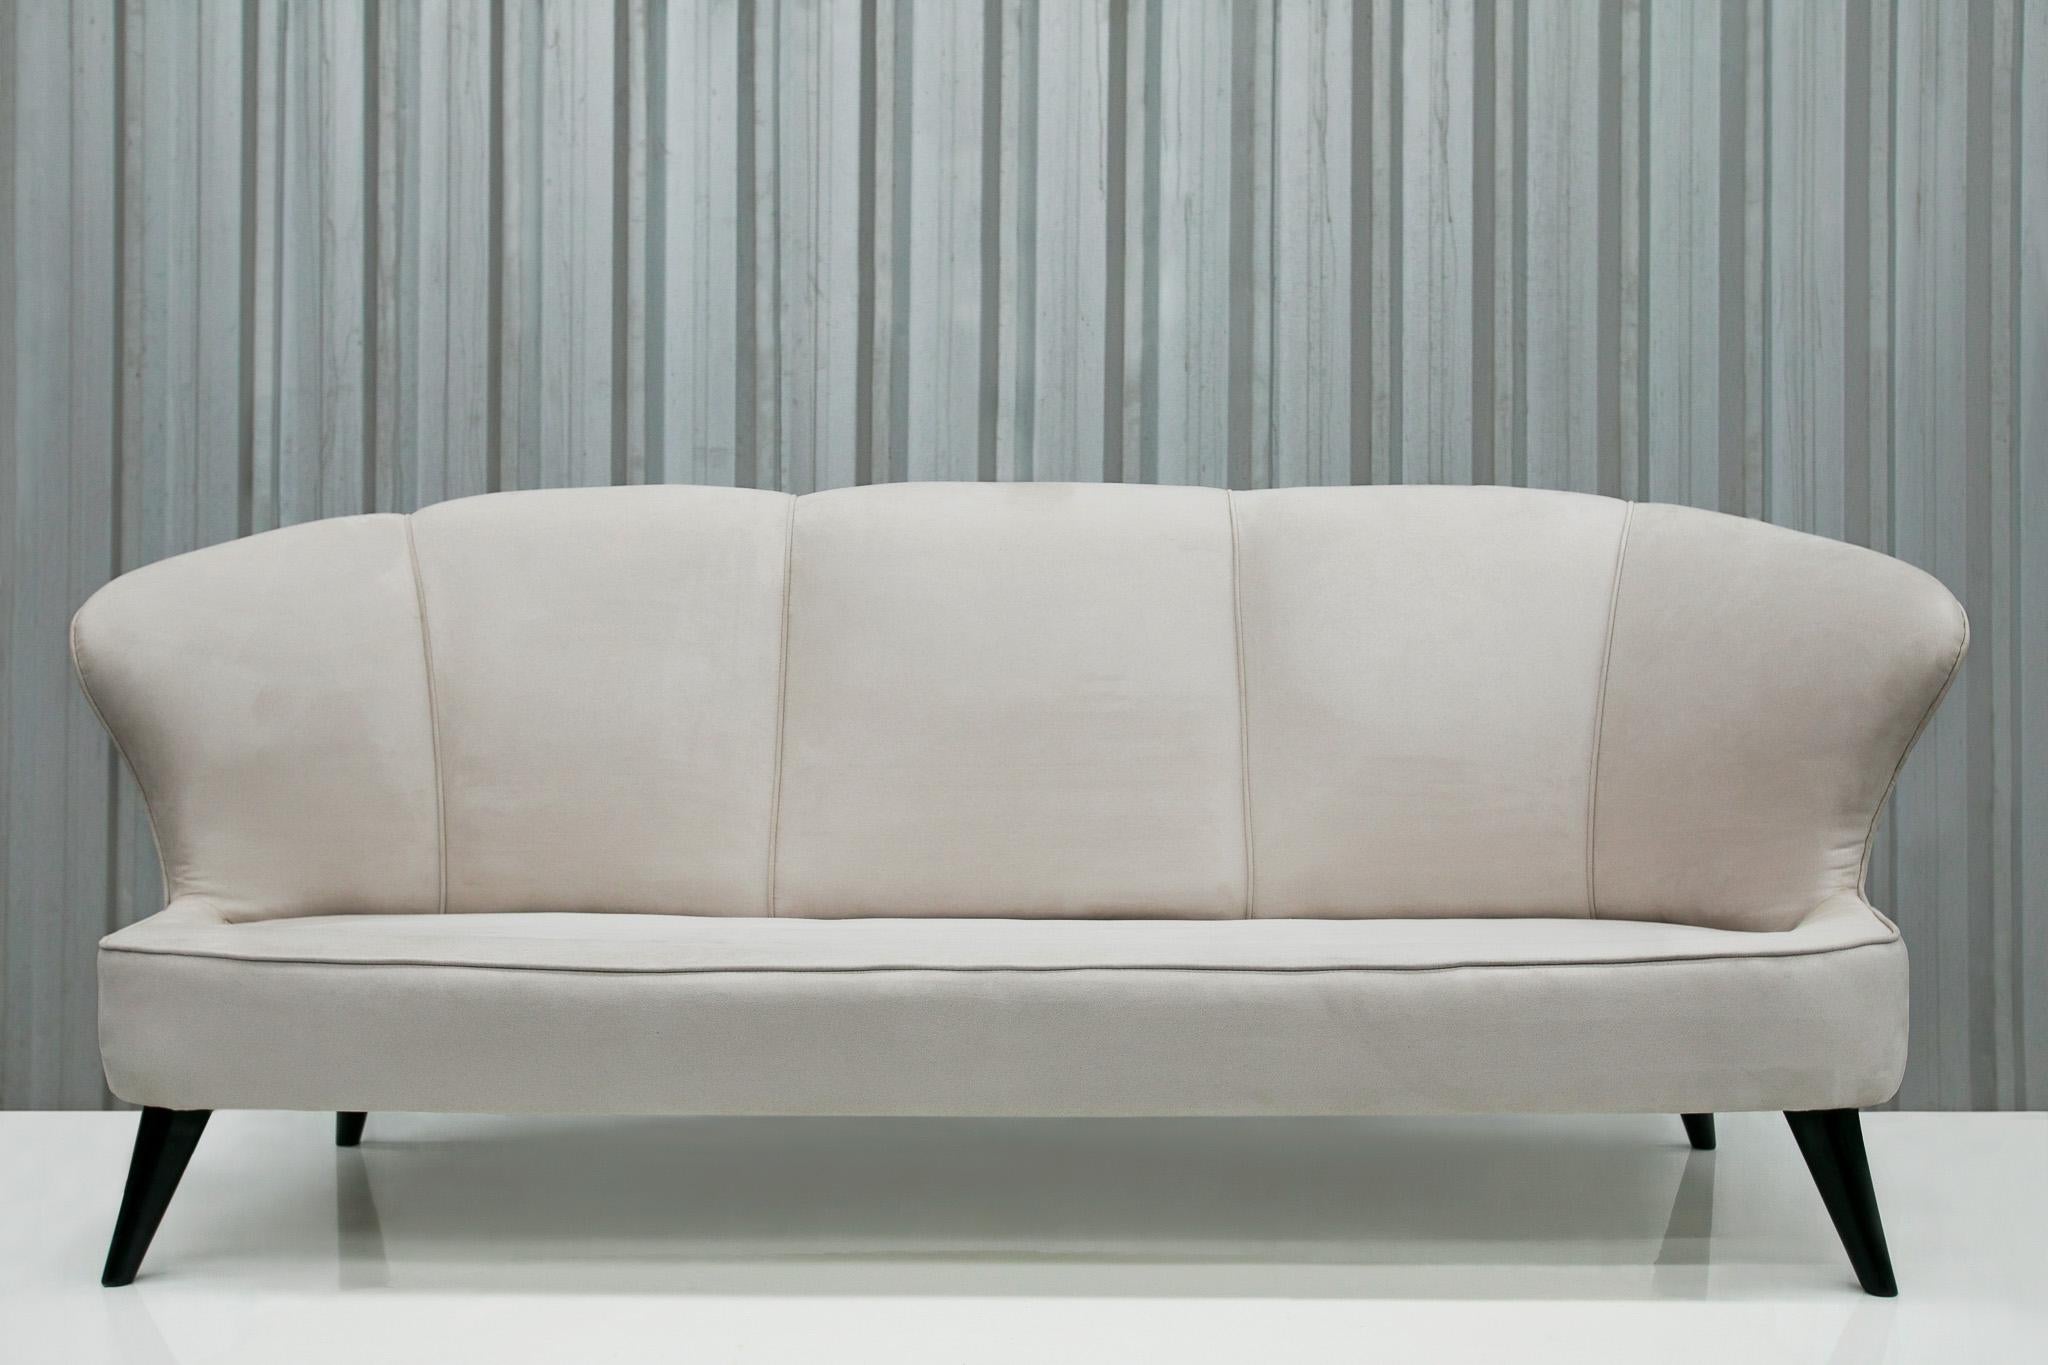 20th Century Midcentury Modern Sofa in Hardwood & Grey Velvet by Joaquim Tenreiro Brazil 1960 For Sale